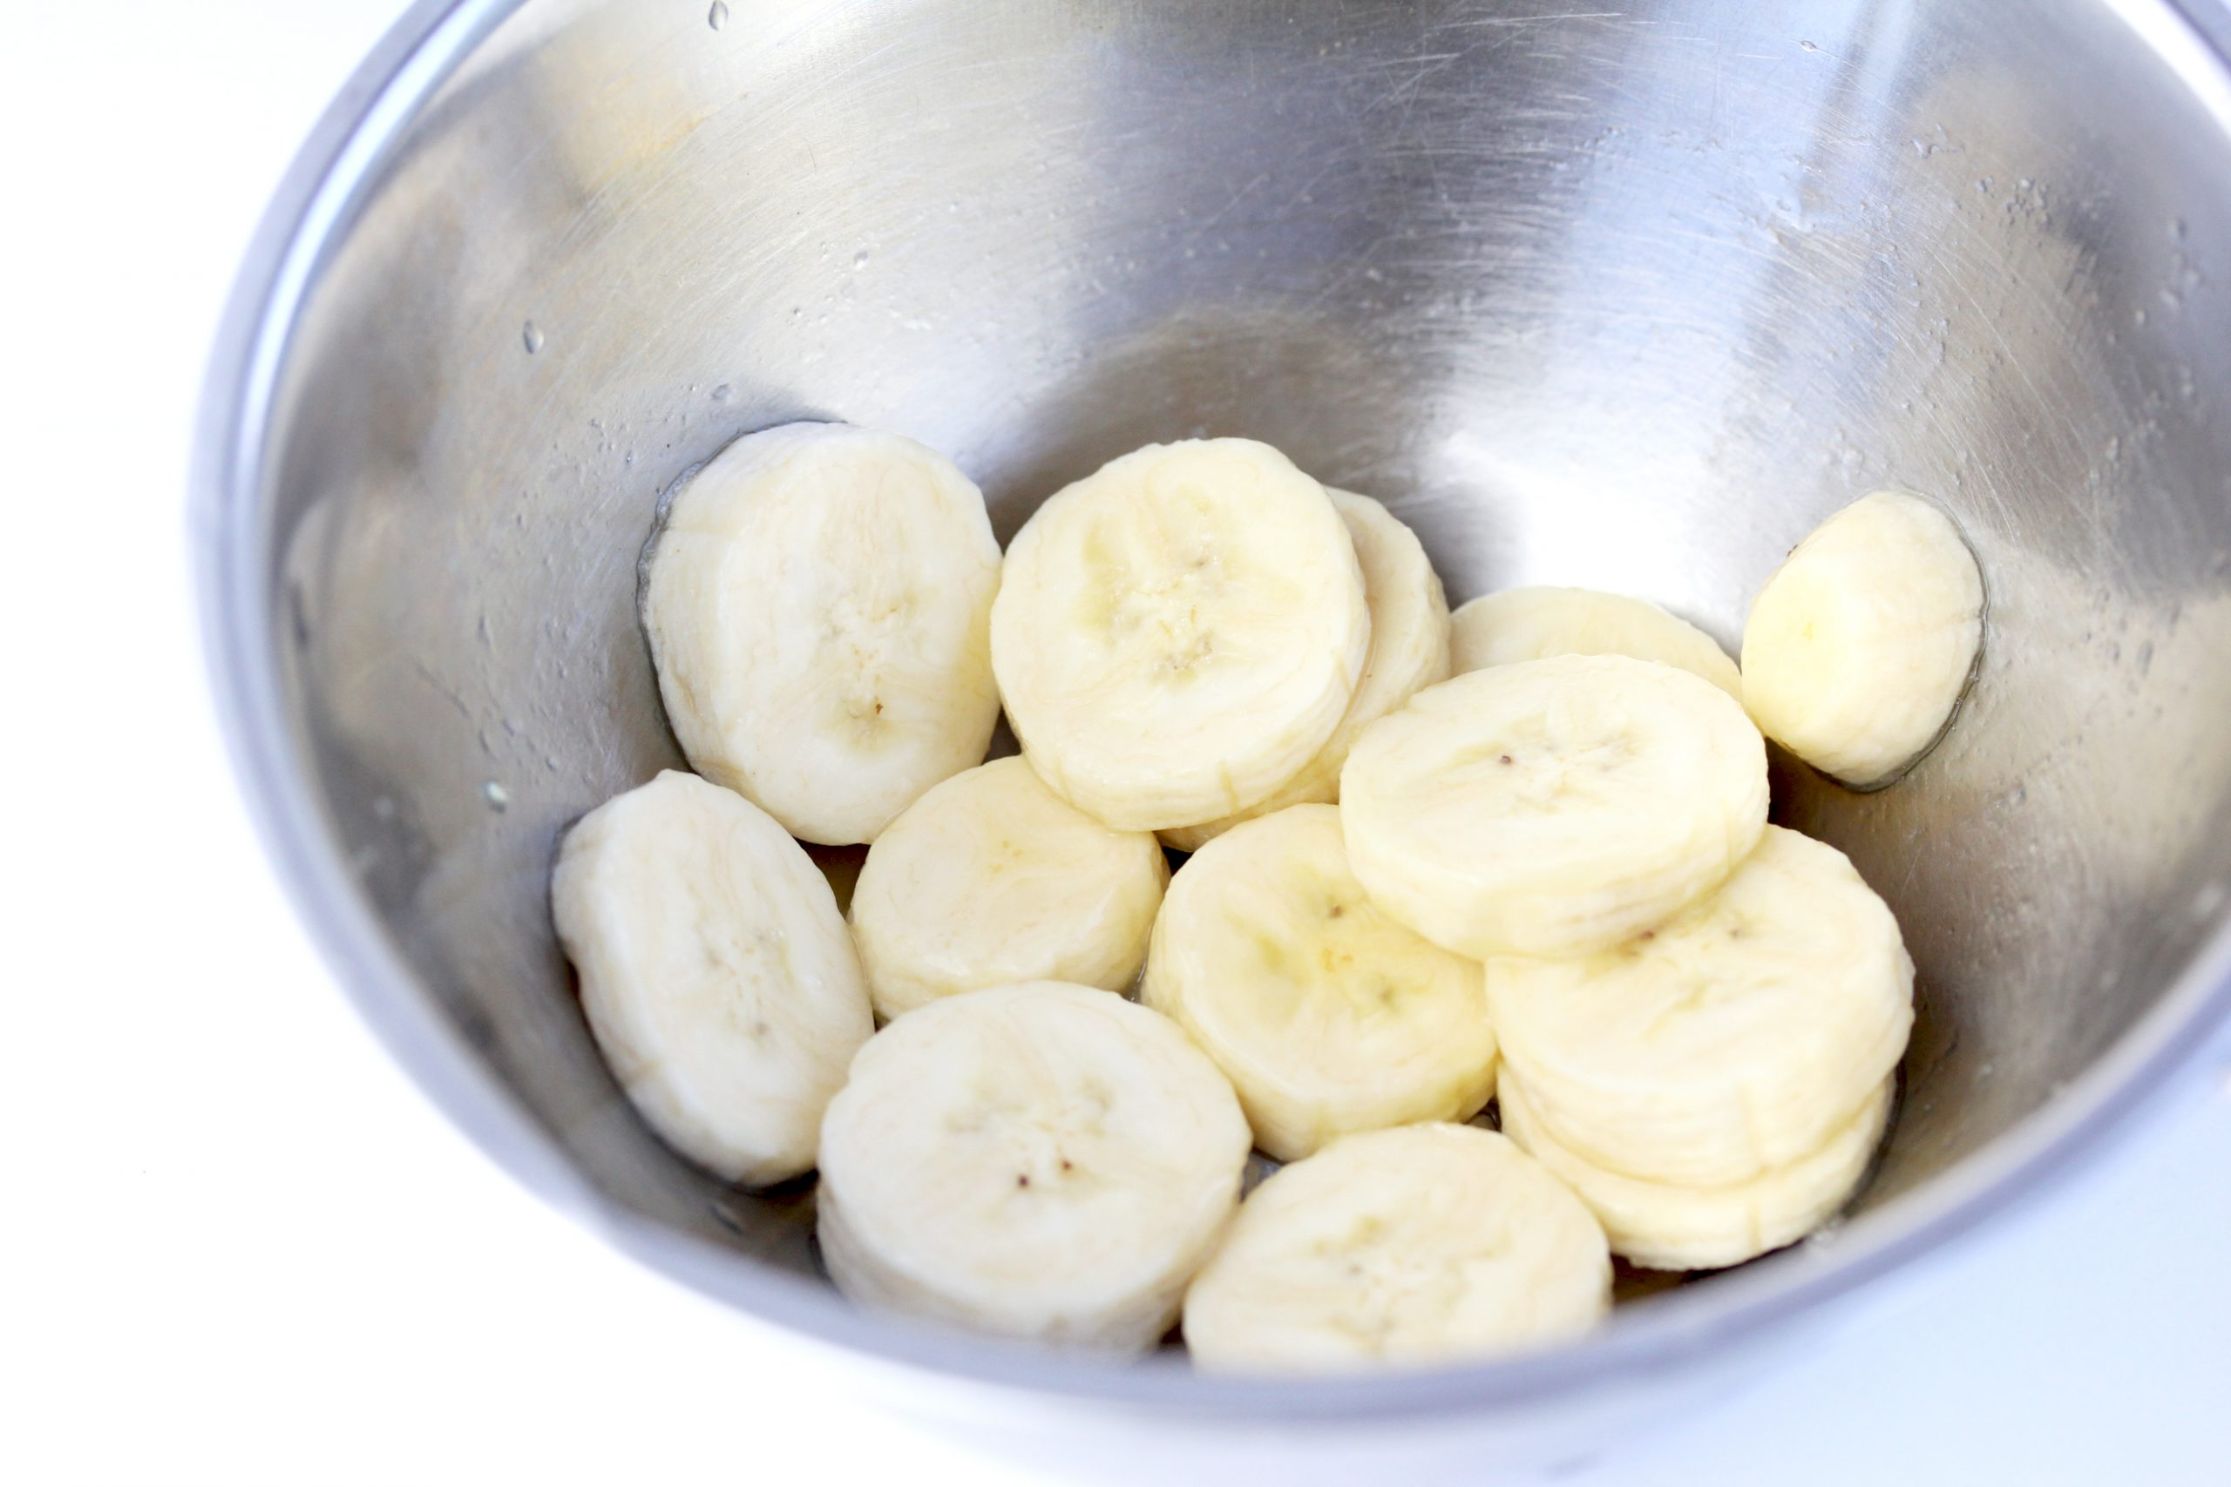 バナナは色が変わるので、切ったらすぐにレモン汁をまぶしましょう。お正月の残りの黒豆やお餅が活用できます。